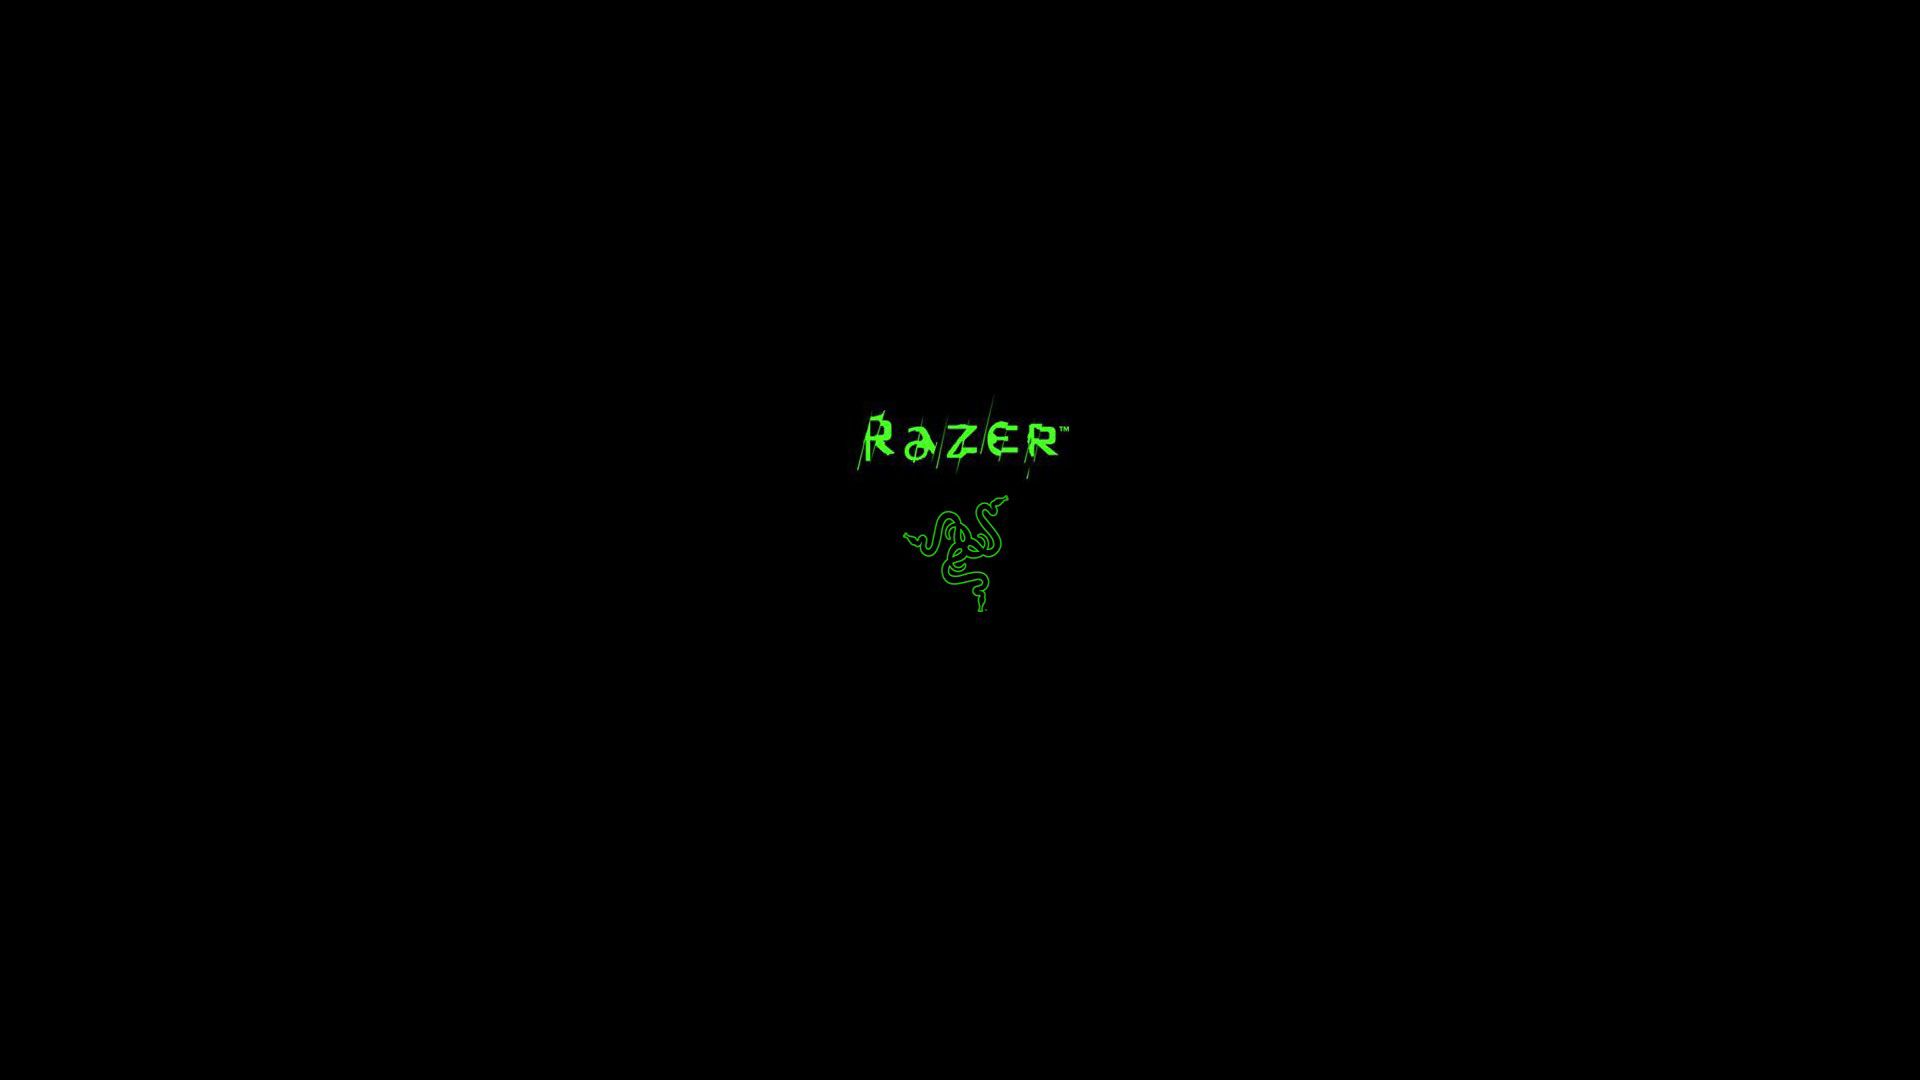 Razer Logo Wallpaper. Batman Logo